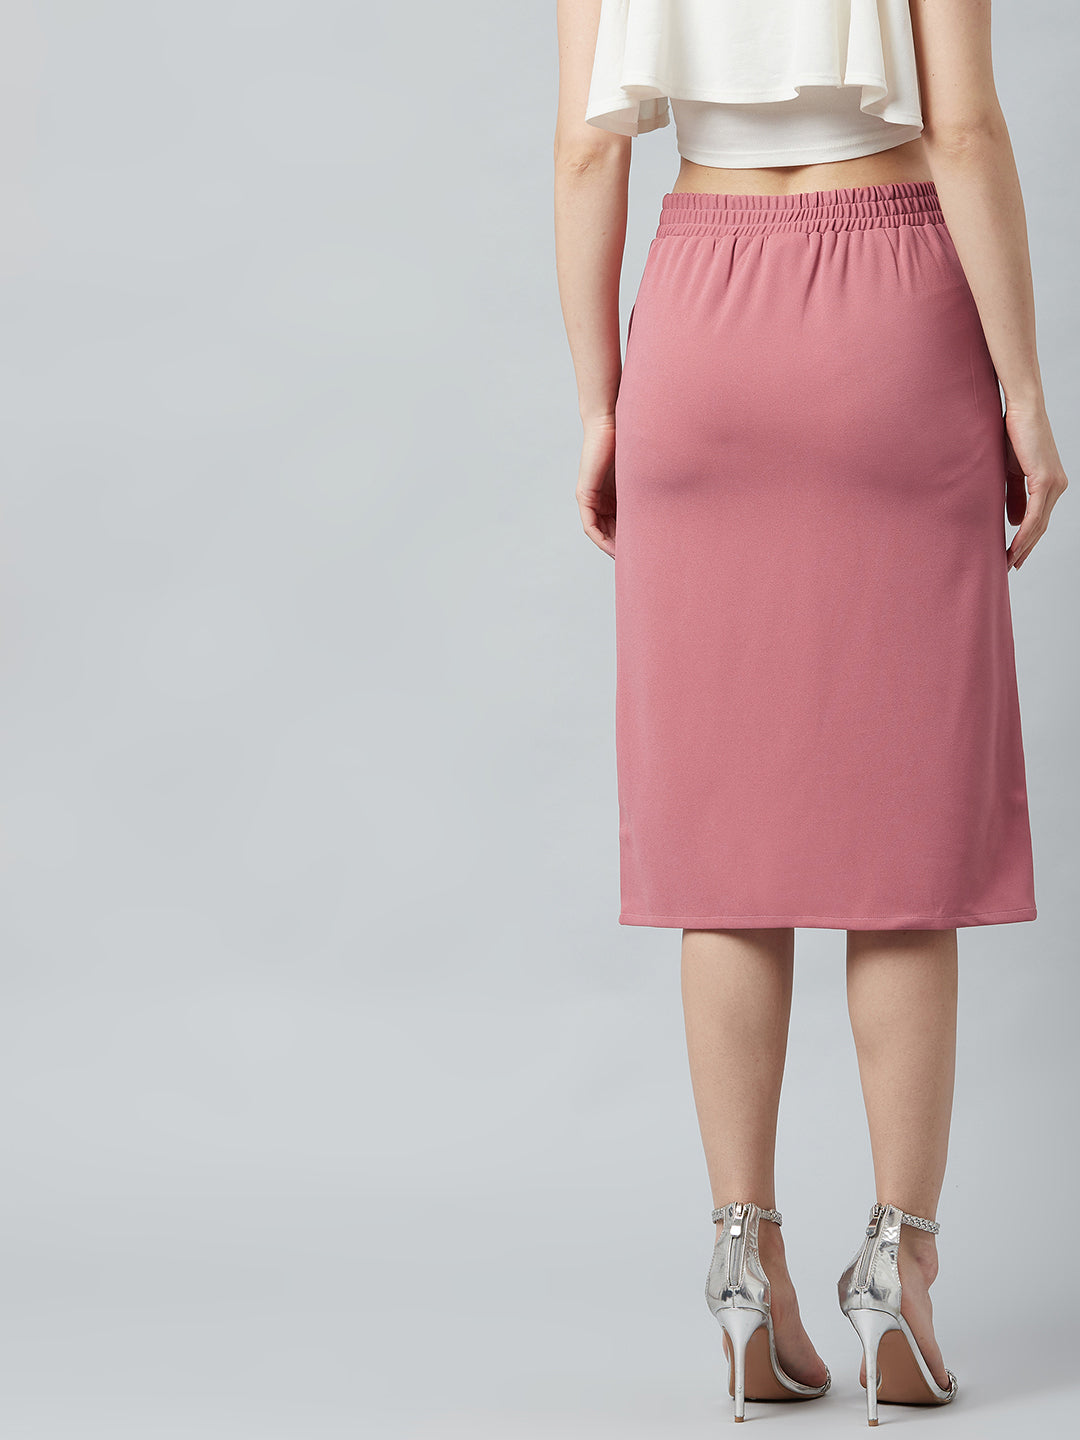 Athena Women Pink Solid Midi Pencil Skirt - Athena Lifestyle